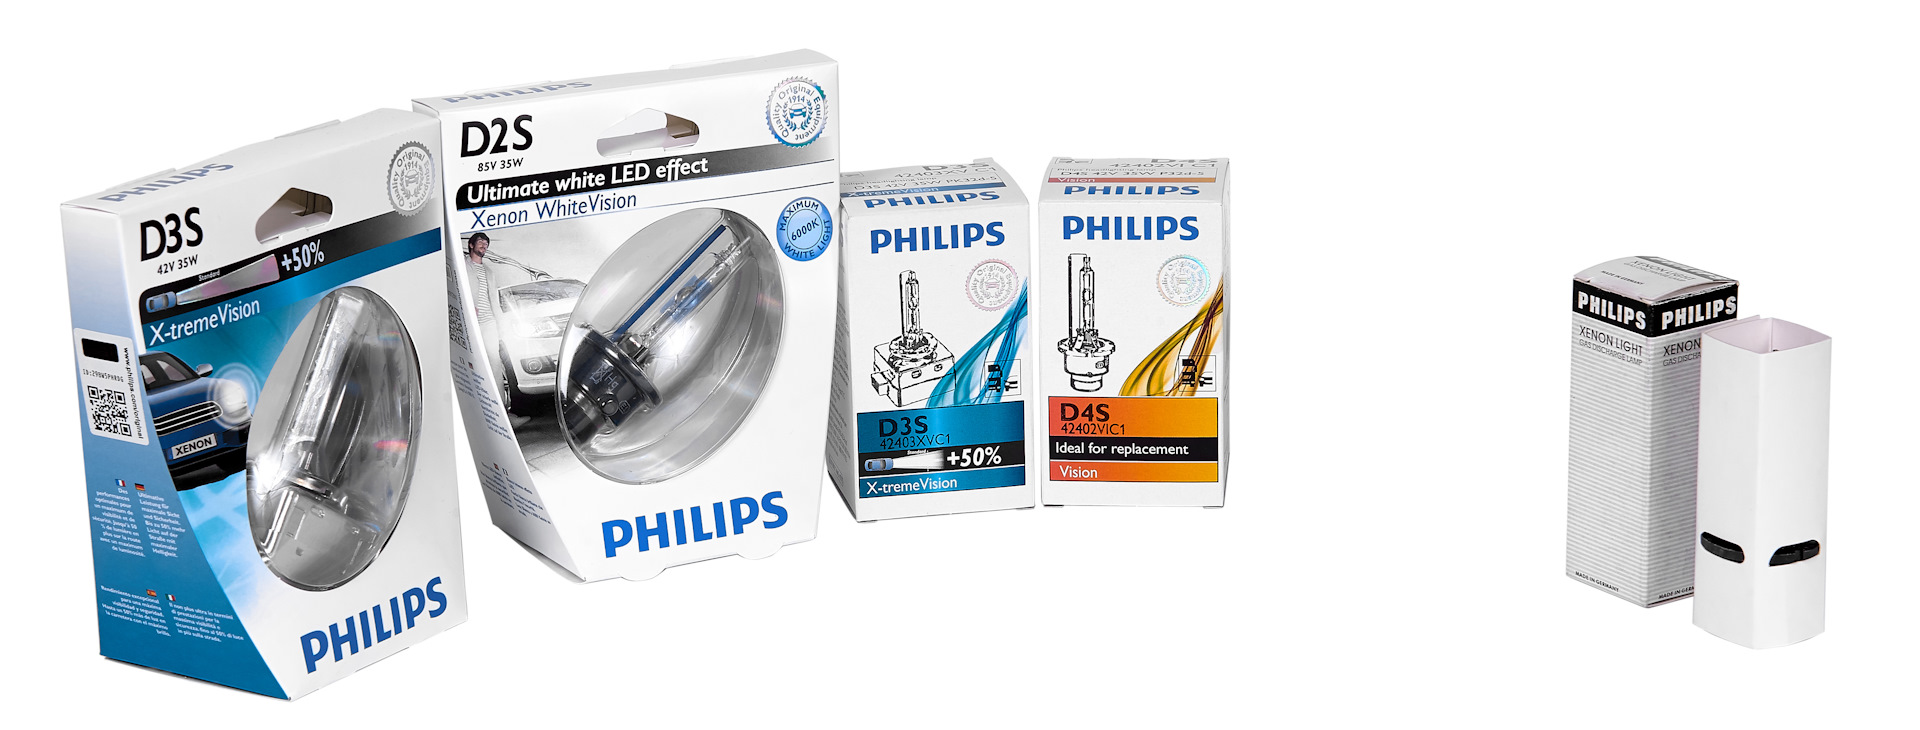 Филипс оригинал. Philips лампы автомобильные 42402wxx2. Маркировка ксеноновых ламп Филипс.